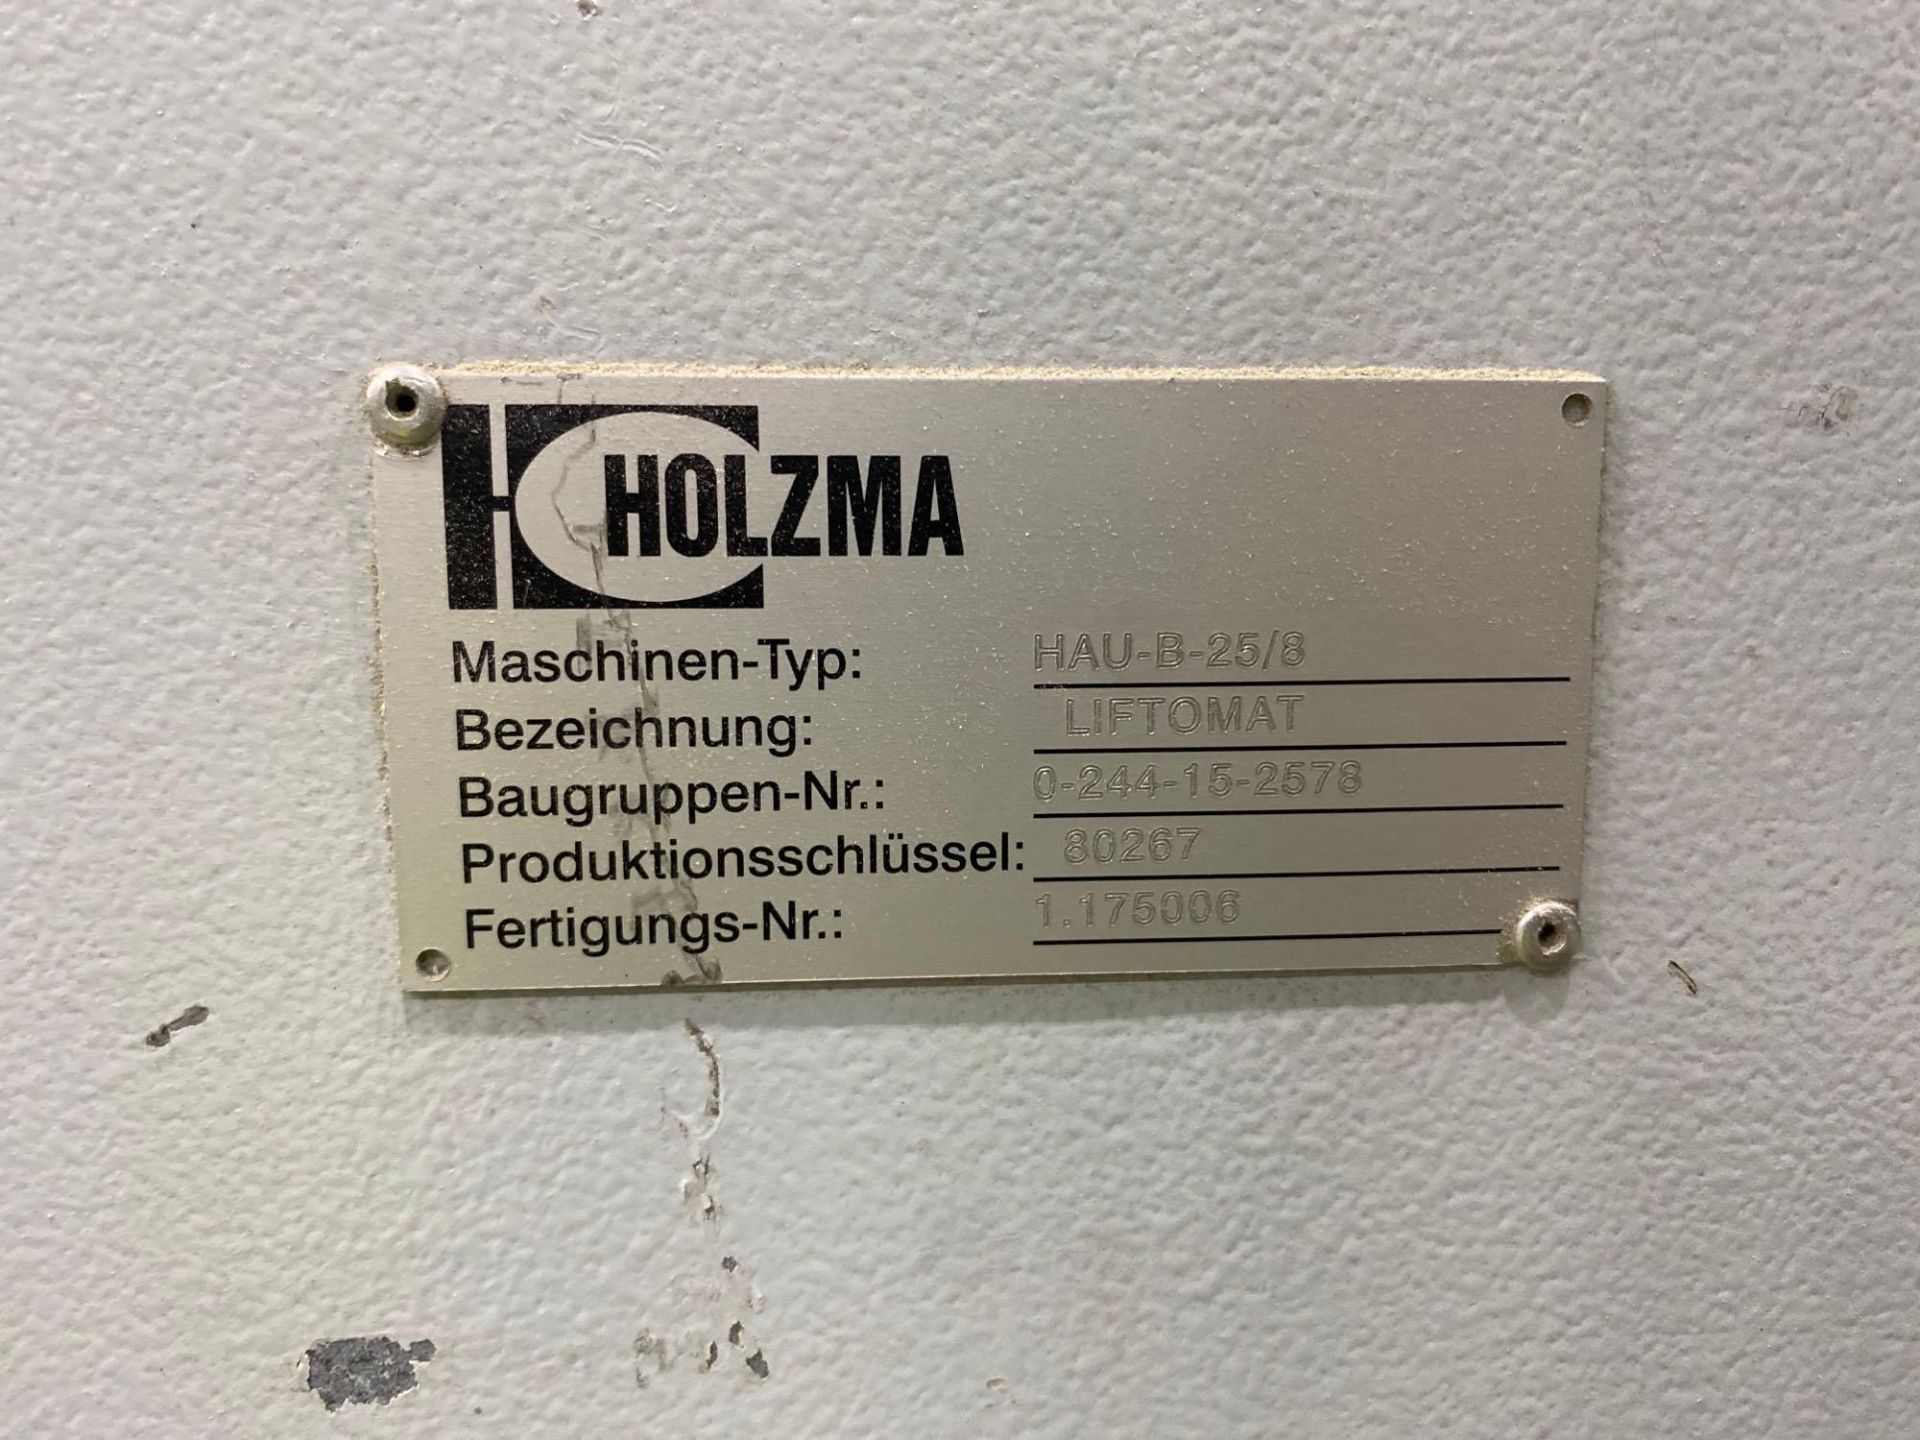 Lot Holzma liftomat HAU-A-25/8 - Image 7 of 14